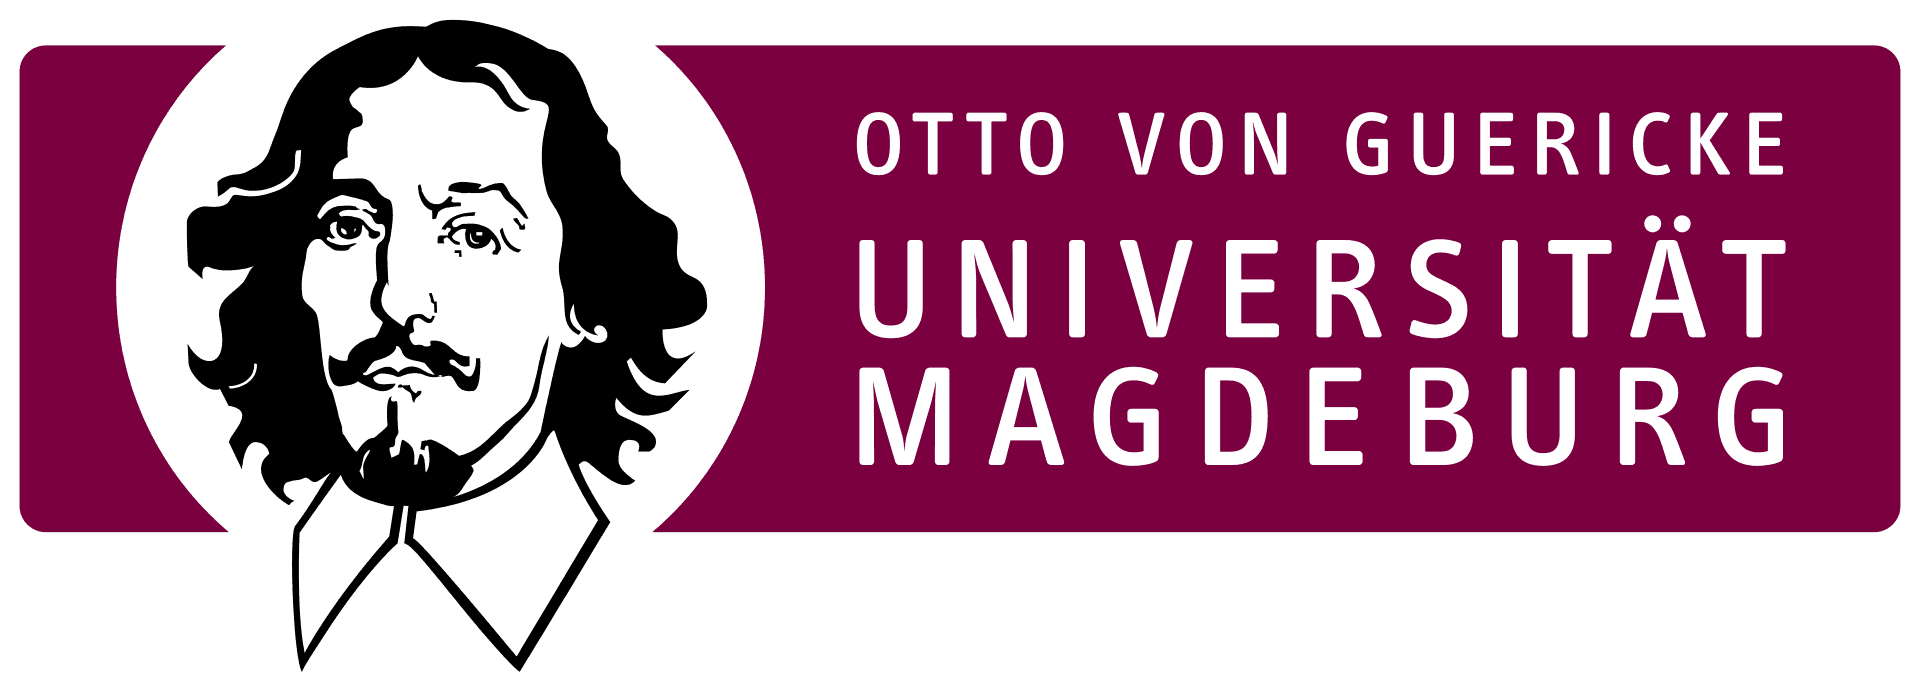 otto-von-guericke-university-magdeburg-a77cb3e4ba-cover-picture